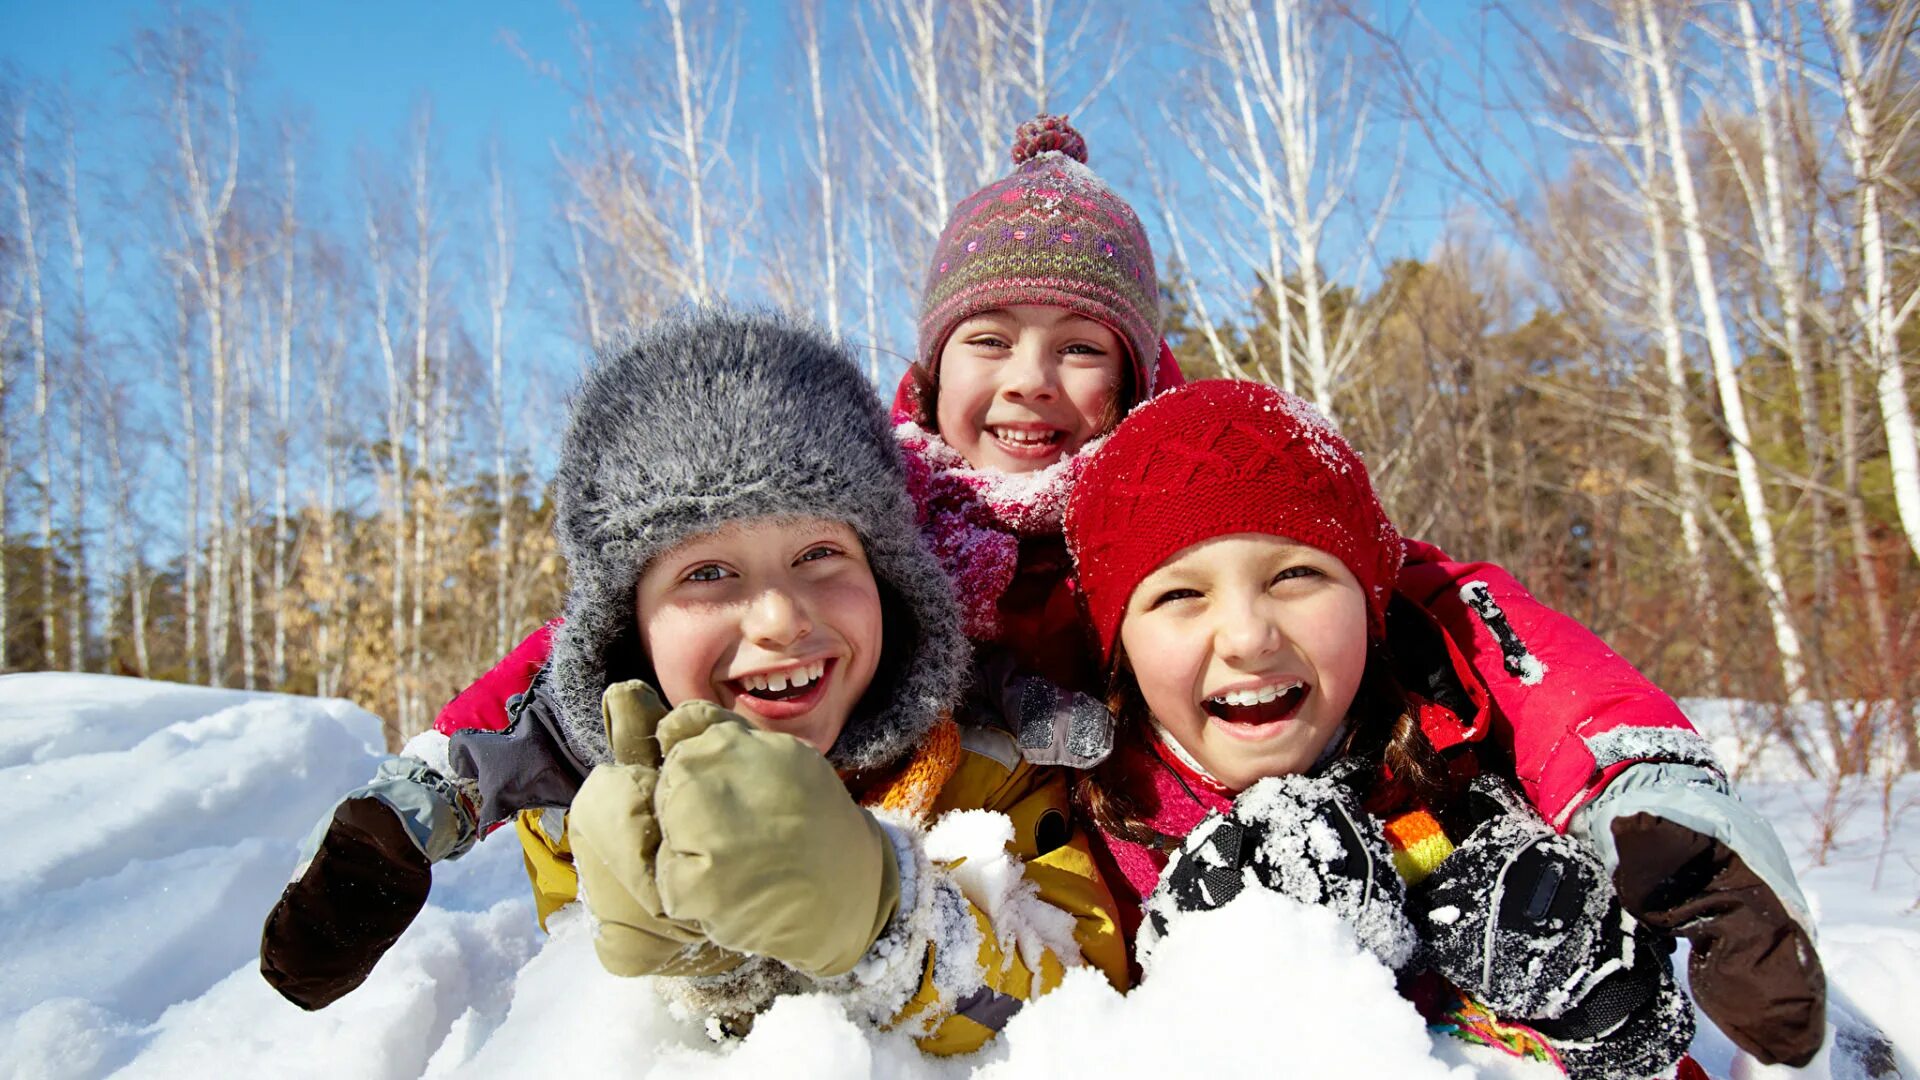 Сегодня день каникул. Дети зимой. Зимний лагерь. Зимний лагерь для детей. Счастливые дети зимой.